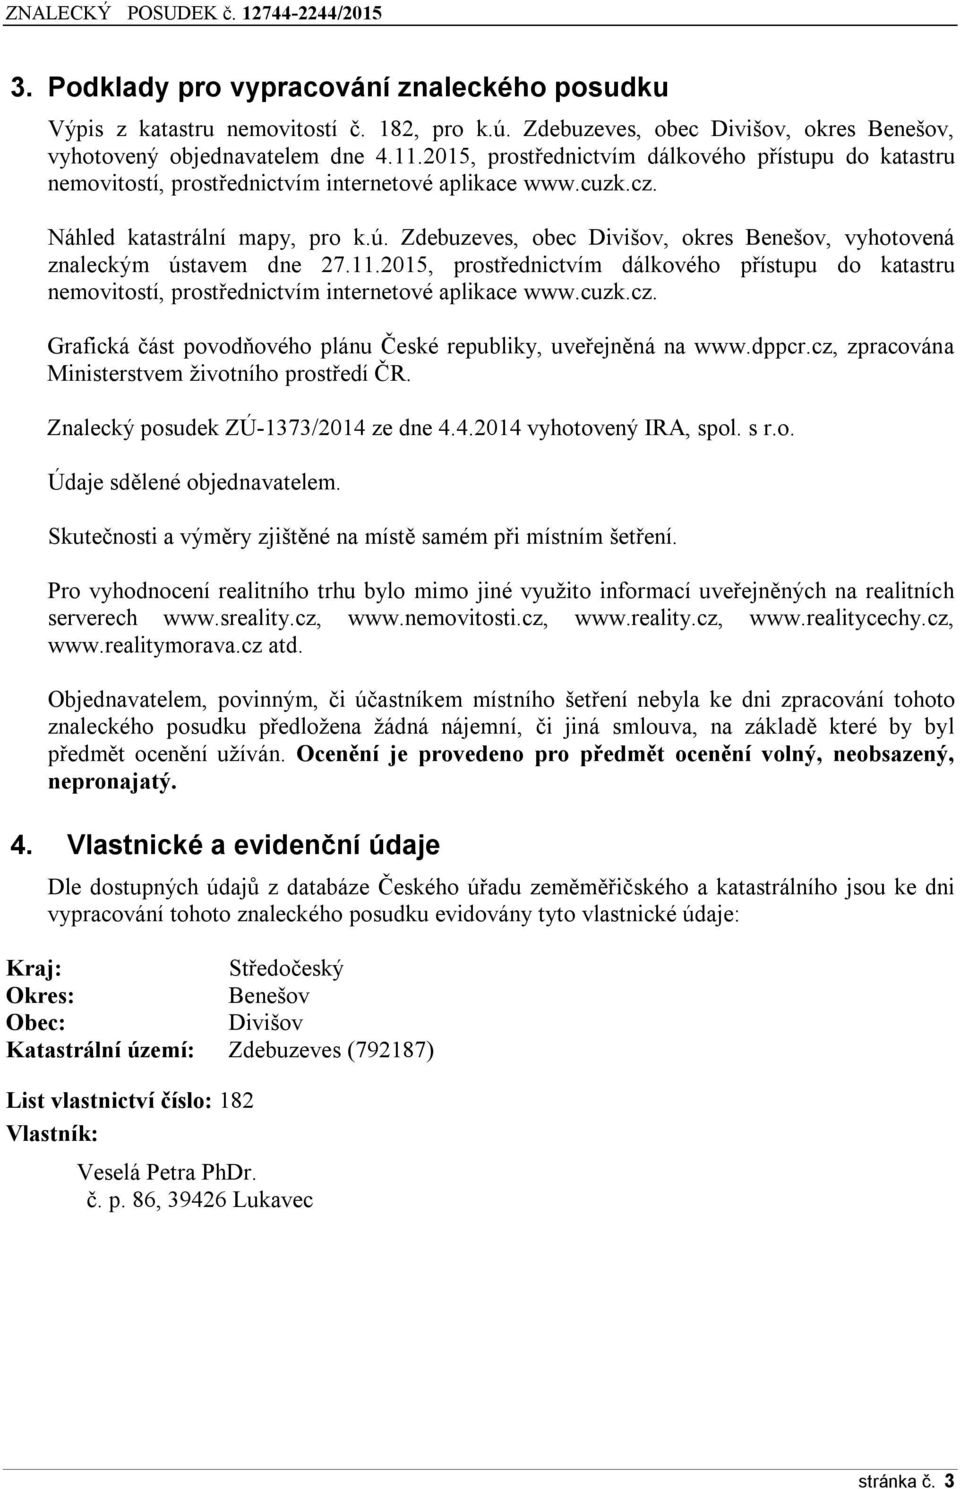 Zdebuzeves, obec Divišov, okres Benešov, vyhotovená znaleckým ústavem dne 27.11.2015, prostřednictvím dálkového přístupu do katastru nemovitostí, prostřednictvím internetové aplikace www.cuzk.cz.